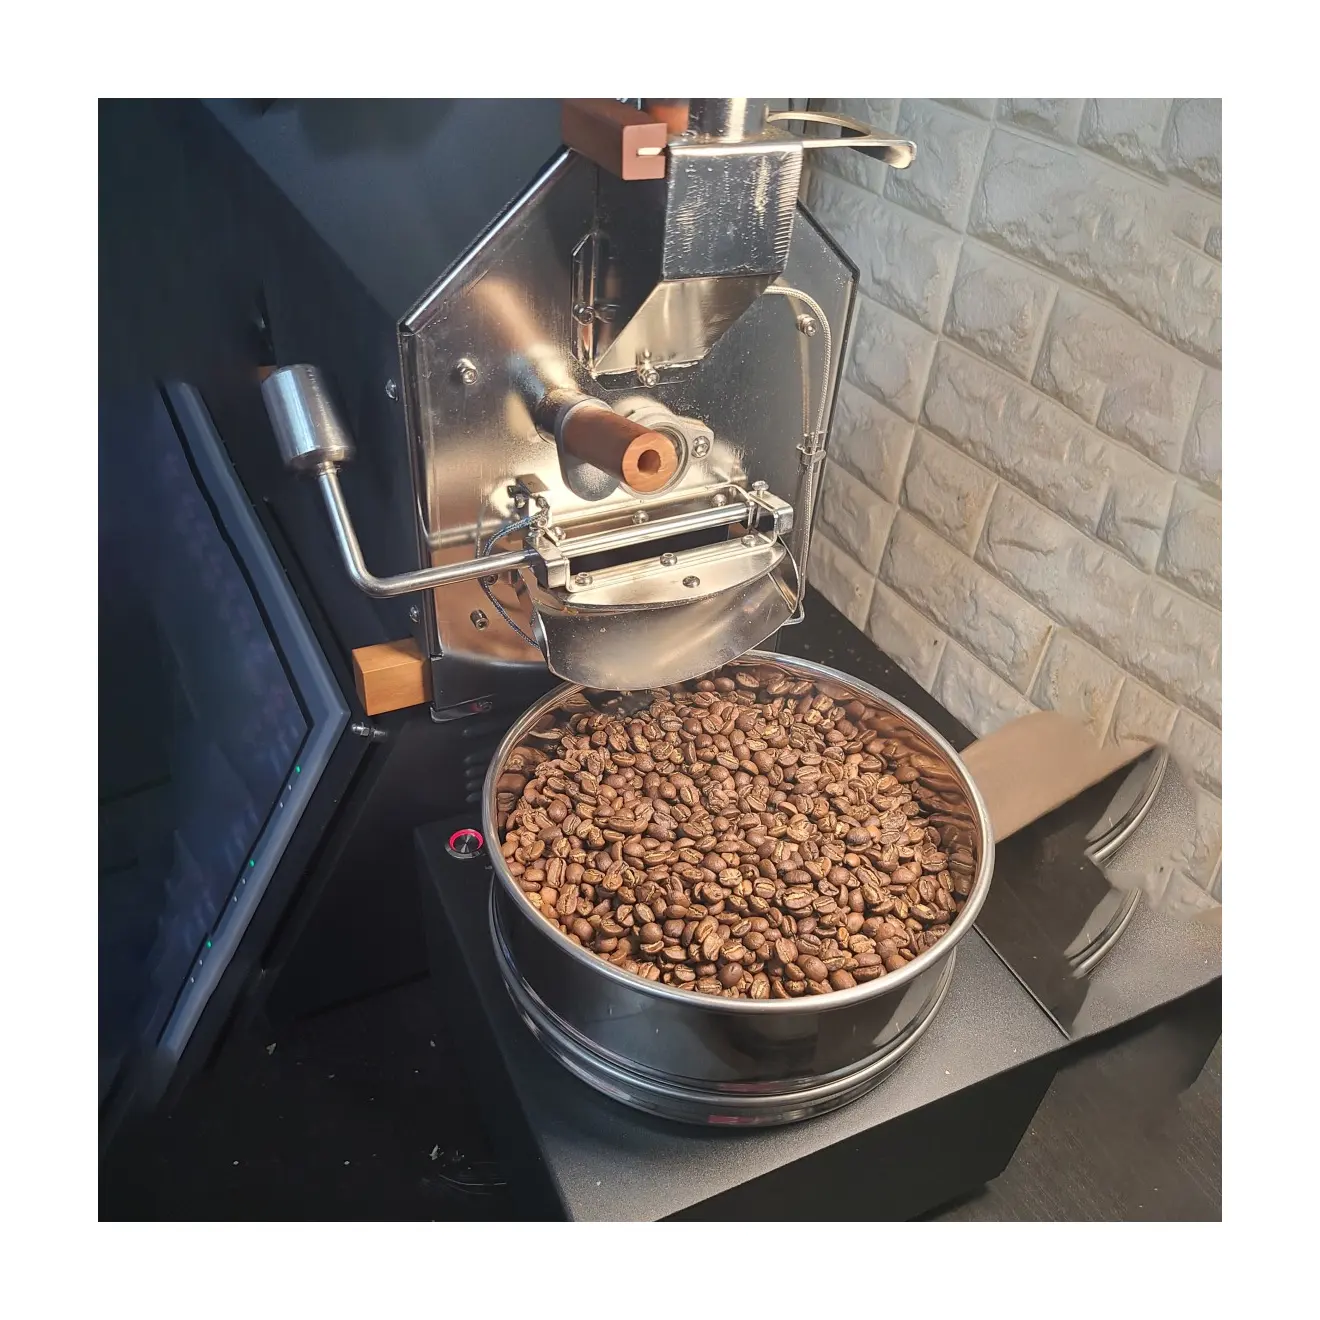 المهنية التجارية الصغيرة دائم ماكينة التحميص 500g الفول محمصة قهوة